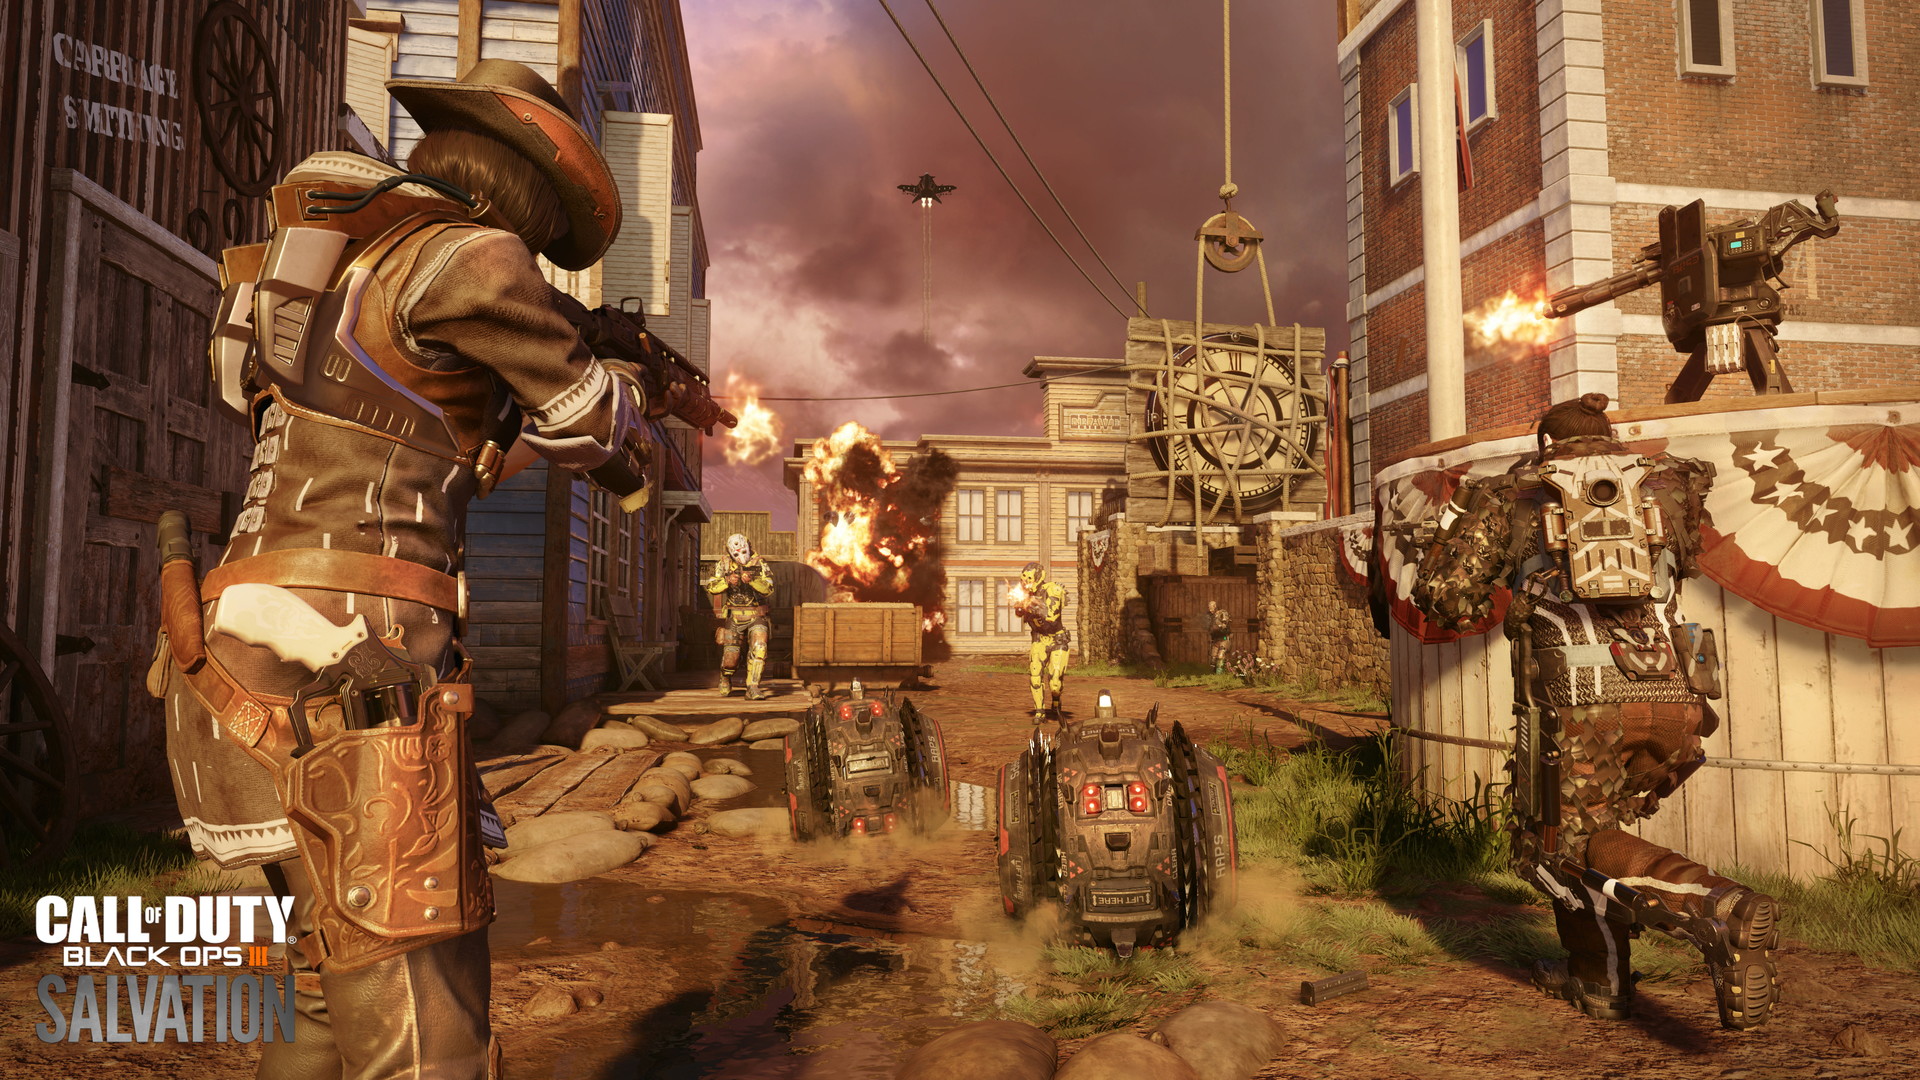 Call of Duty: Black Ops 3 - Salvation - screenshot 3